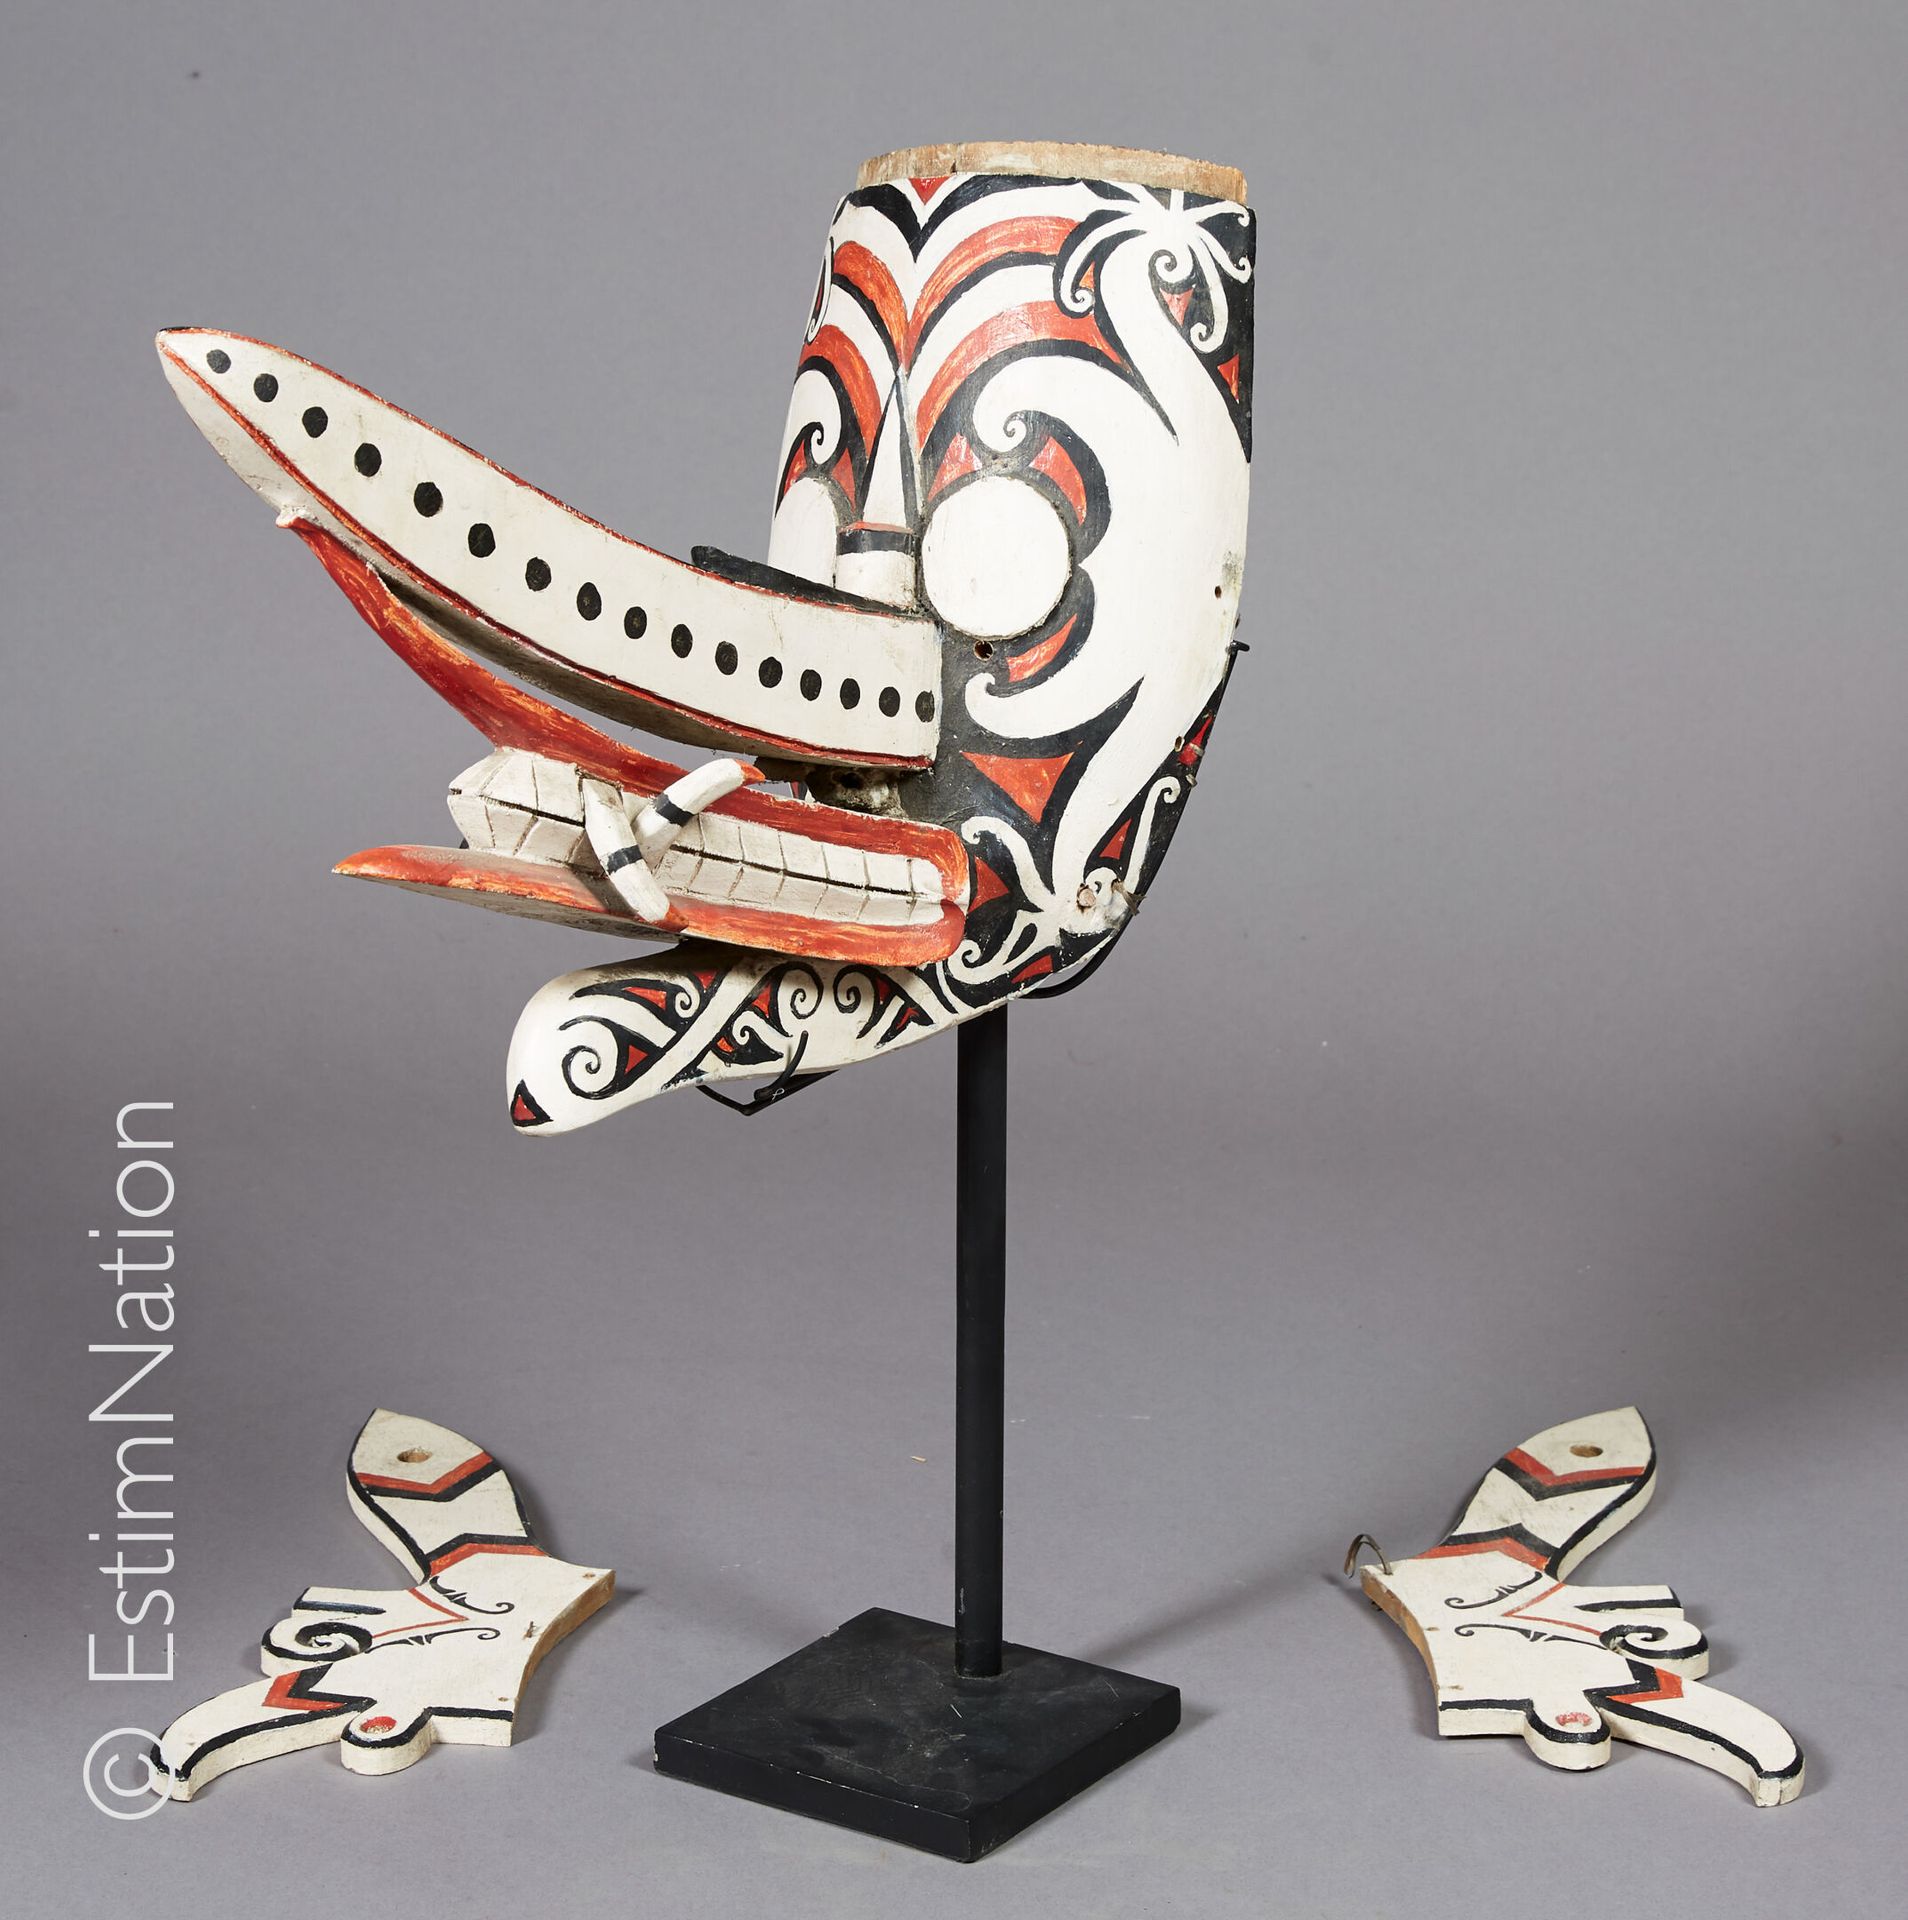 DAYAK - BORNEO 
达亚克-伯尔尼奥









胡多克型面具，采用木雕和天然颜料，表现了一个具有突出的耳朵、下巴和牙齿的变形神灵。




&hellip;